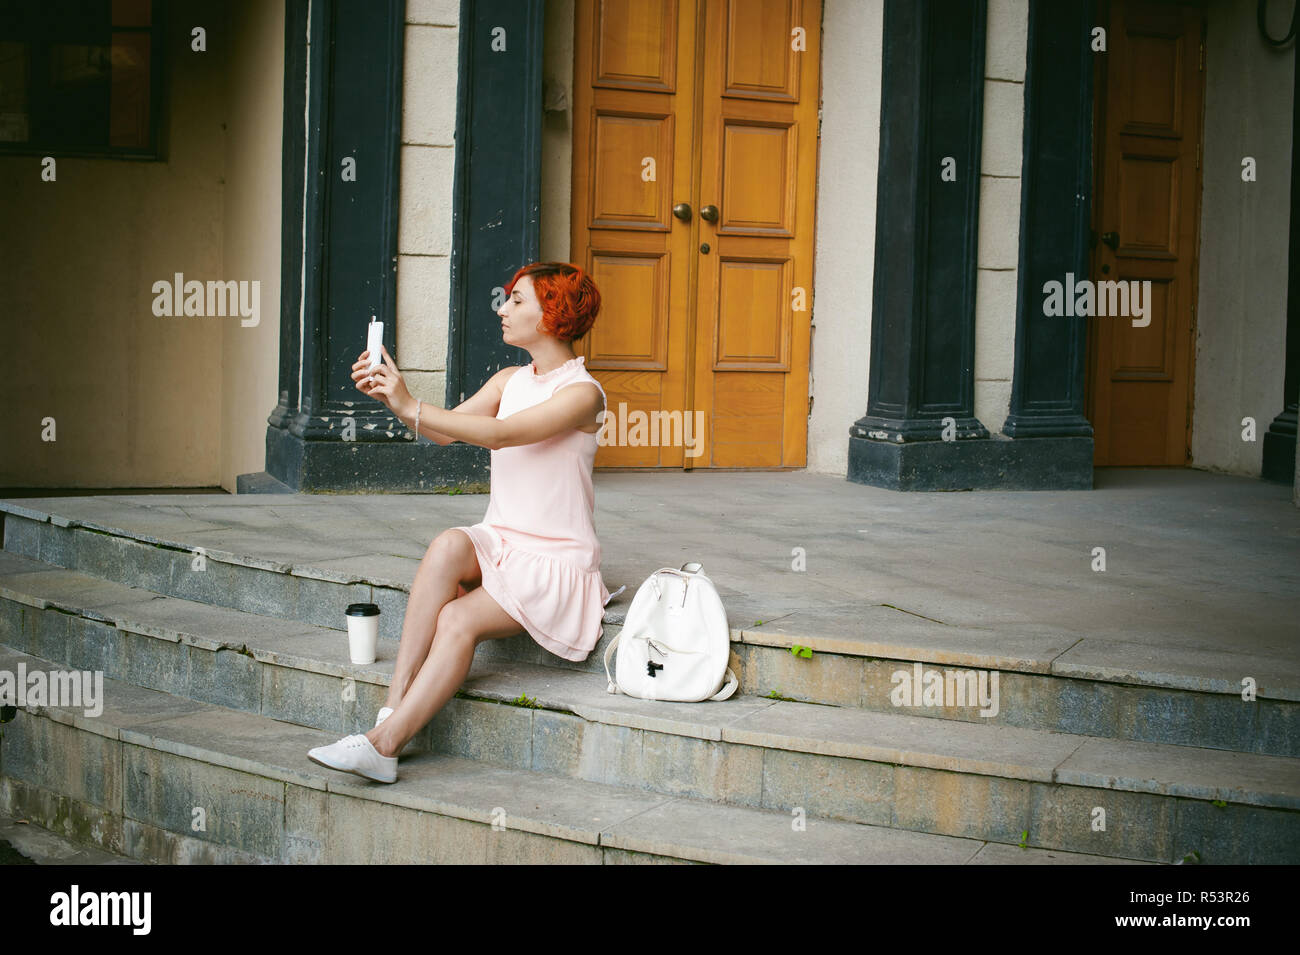 Chica haciendo selfie. mujer teñida de cabello rojo en un vestido rosado  pálido con una mochila color blanco de beber café, fotos de sí mismos en  sus teléfonos móviles con cámara, sentada